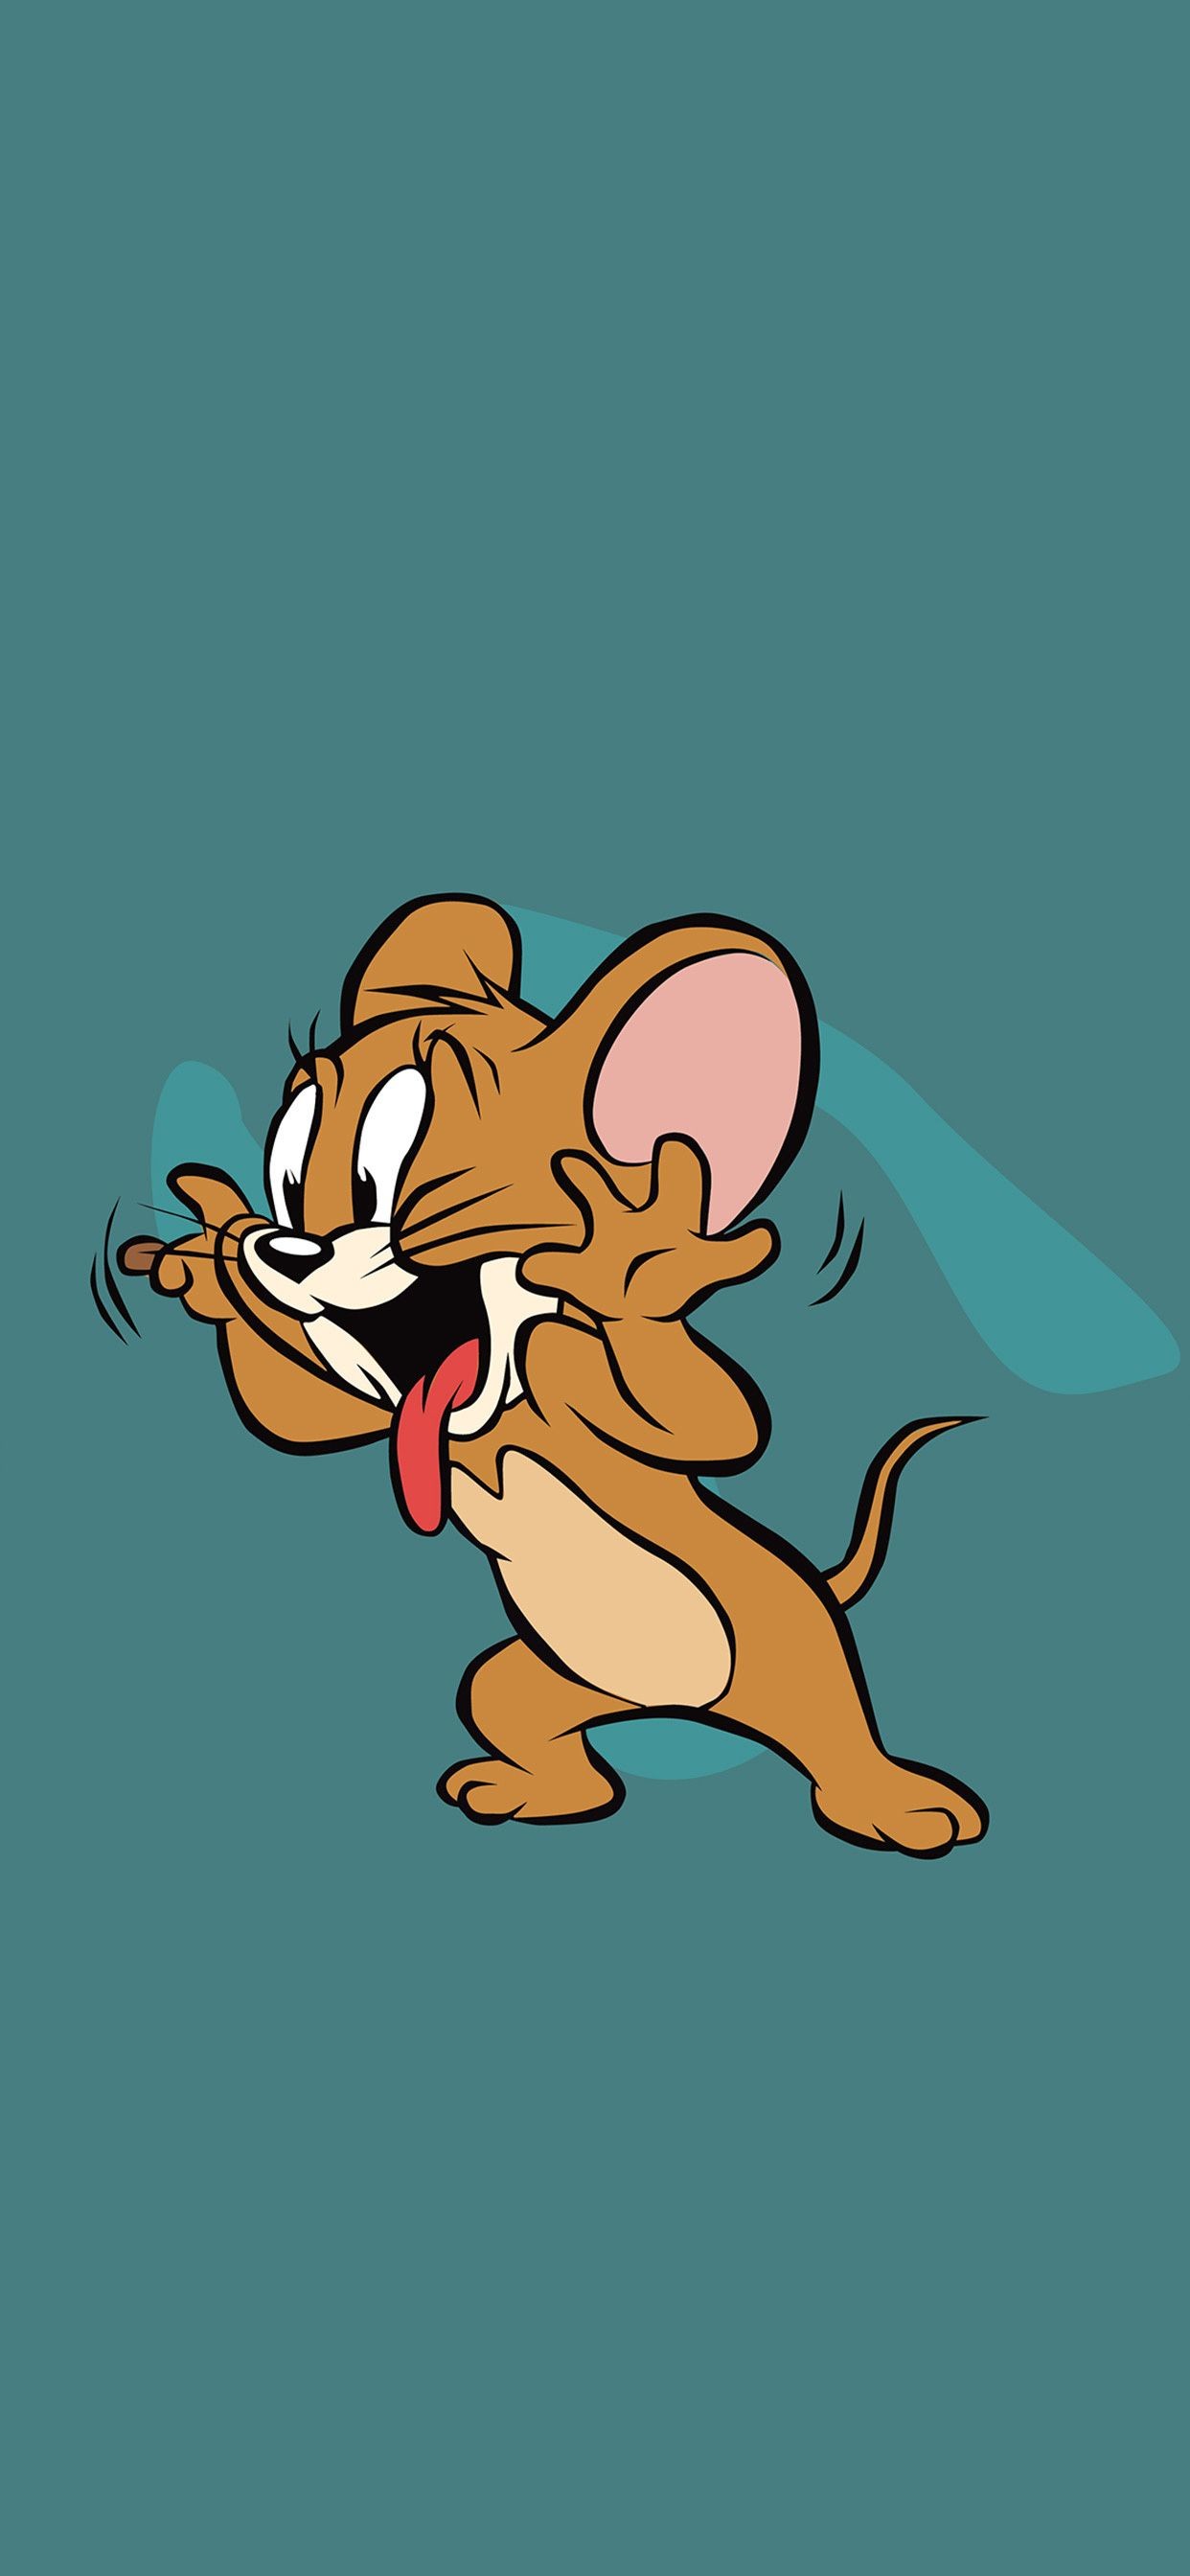 Bộ phim hoạt hình Tom and Jerry buồn sẽ đưa bạn vào cảm giác xúc động và tận hưởng những giây phút cảm động cùng Avatar đôi. Không chỉ mang lại trải nghiệm tuyệt vời, Avatar đôi còn giúp bạn thăng hoa trí tưởng tượng và cảm xúc.